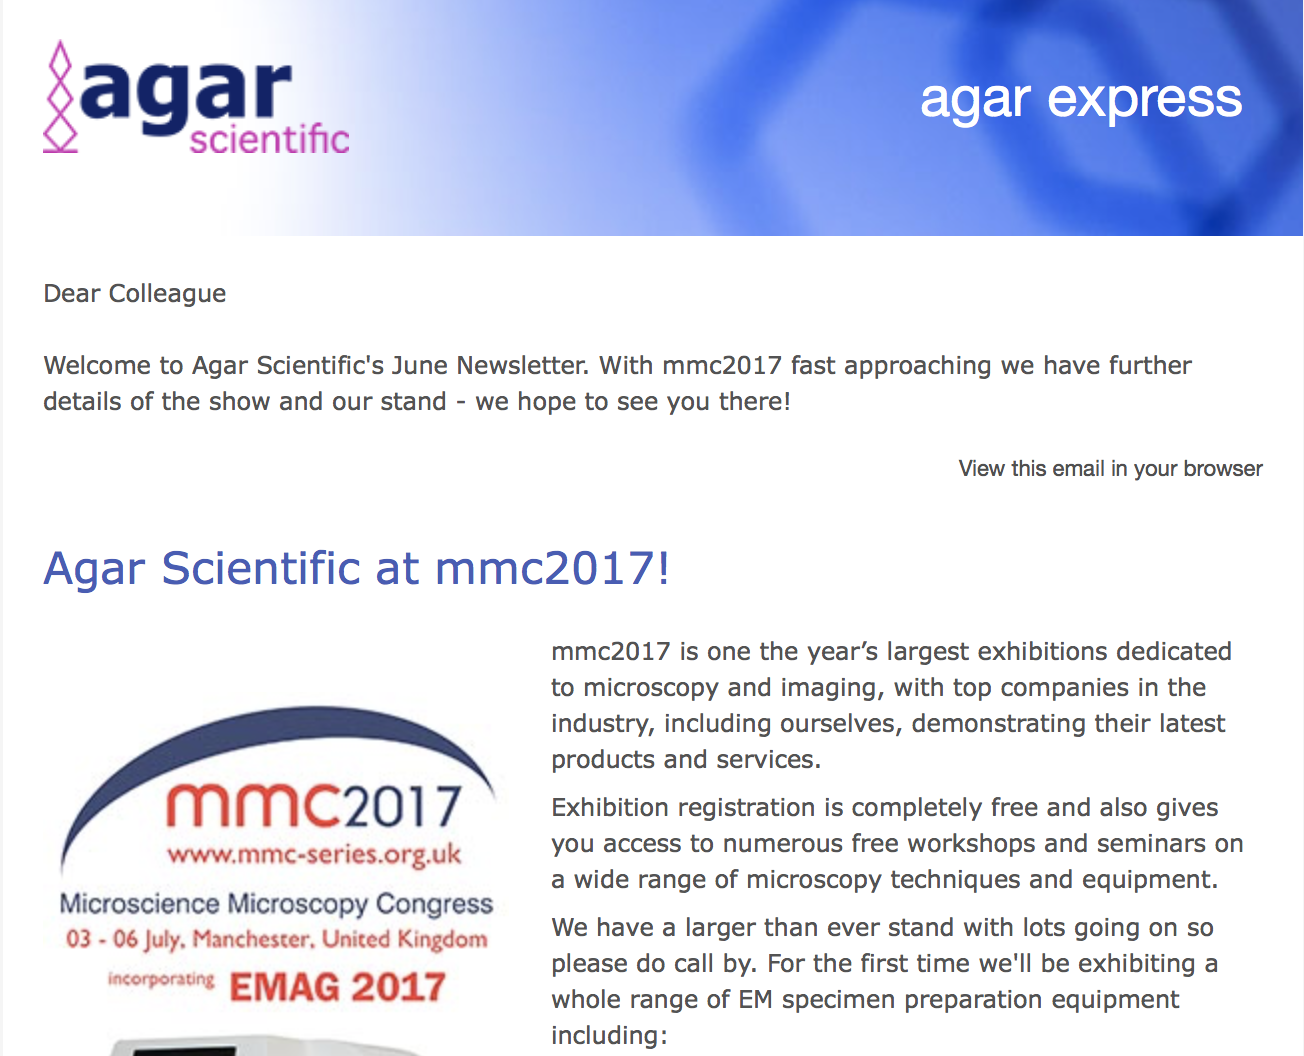 Agar Express June 2017 - mmc2017 approaches!